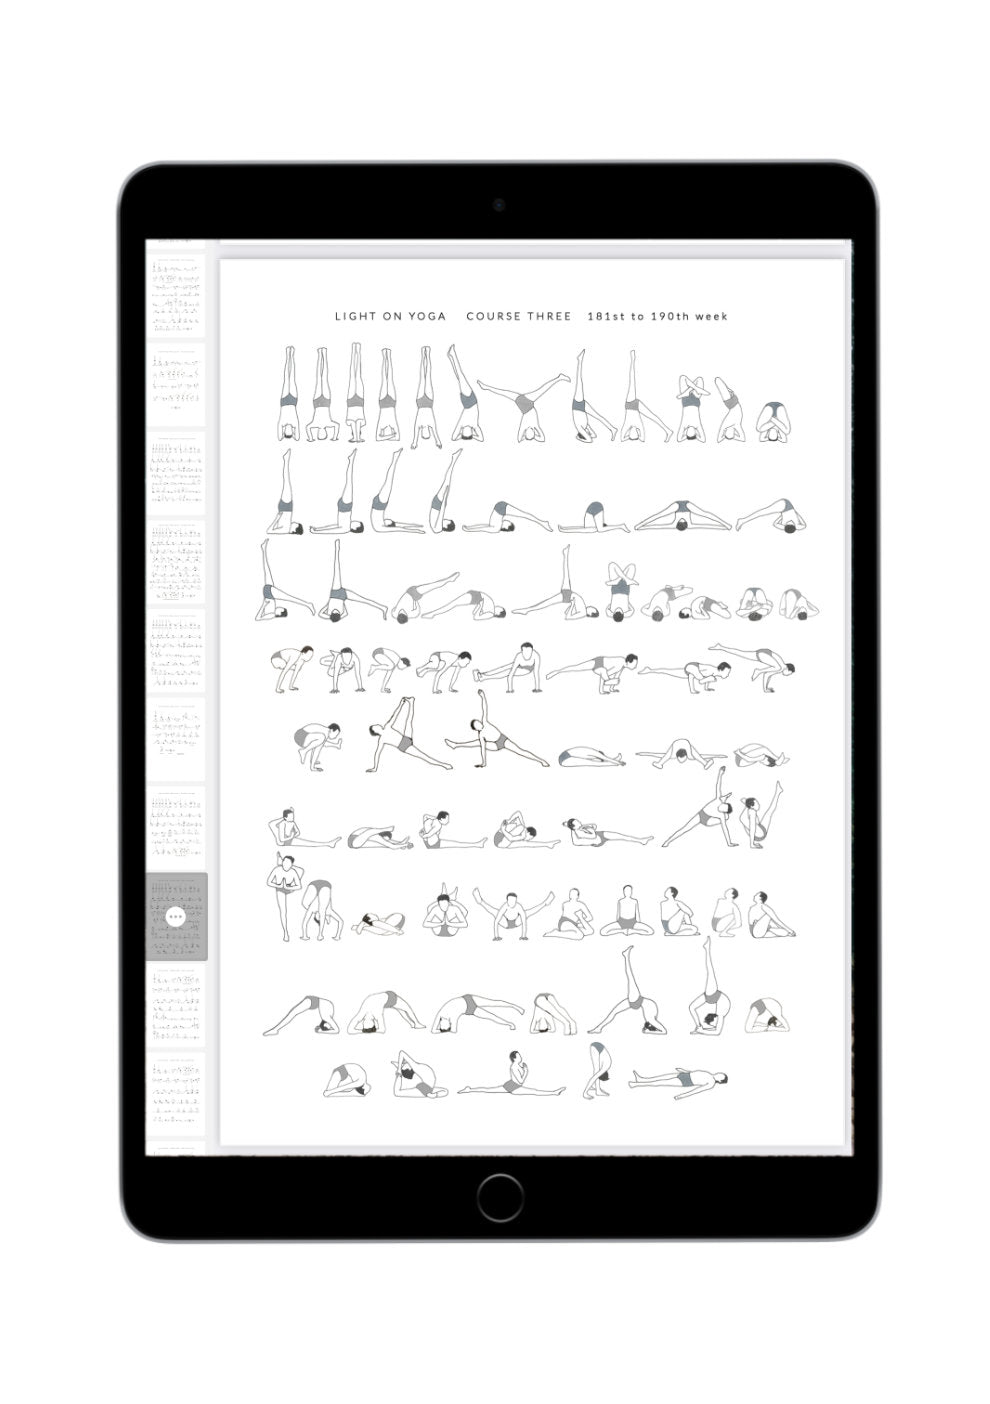 Svejar Yoga Illustrations - Light on Yoga Course 3 - Mockup iPad